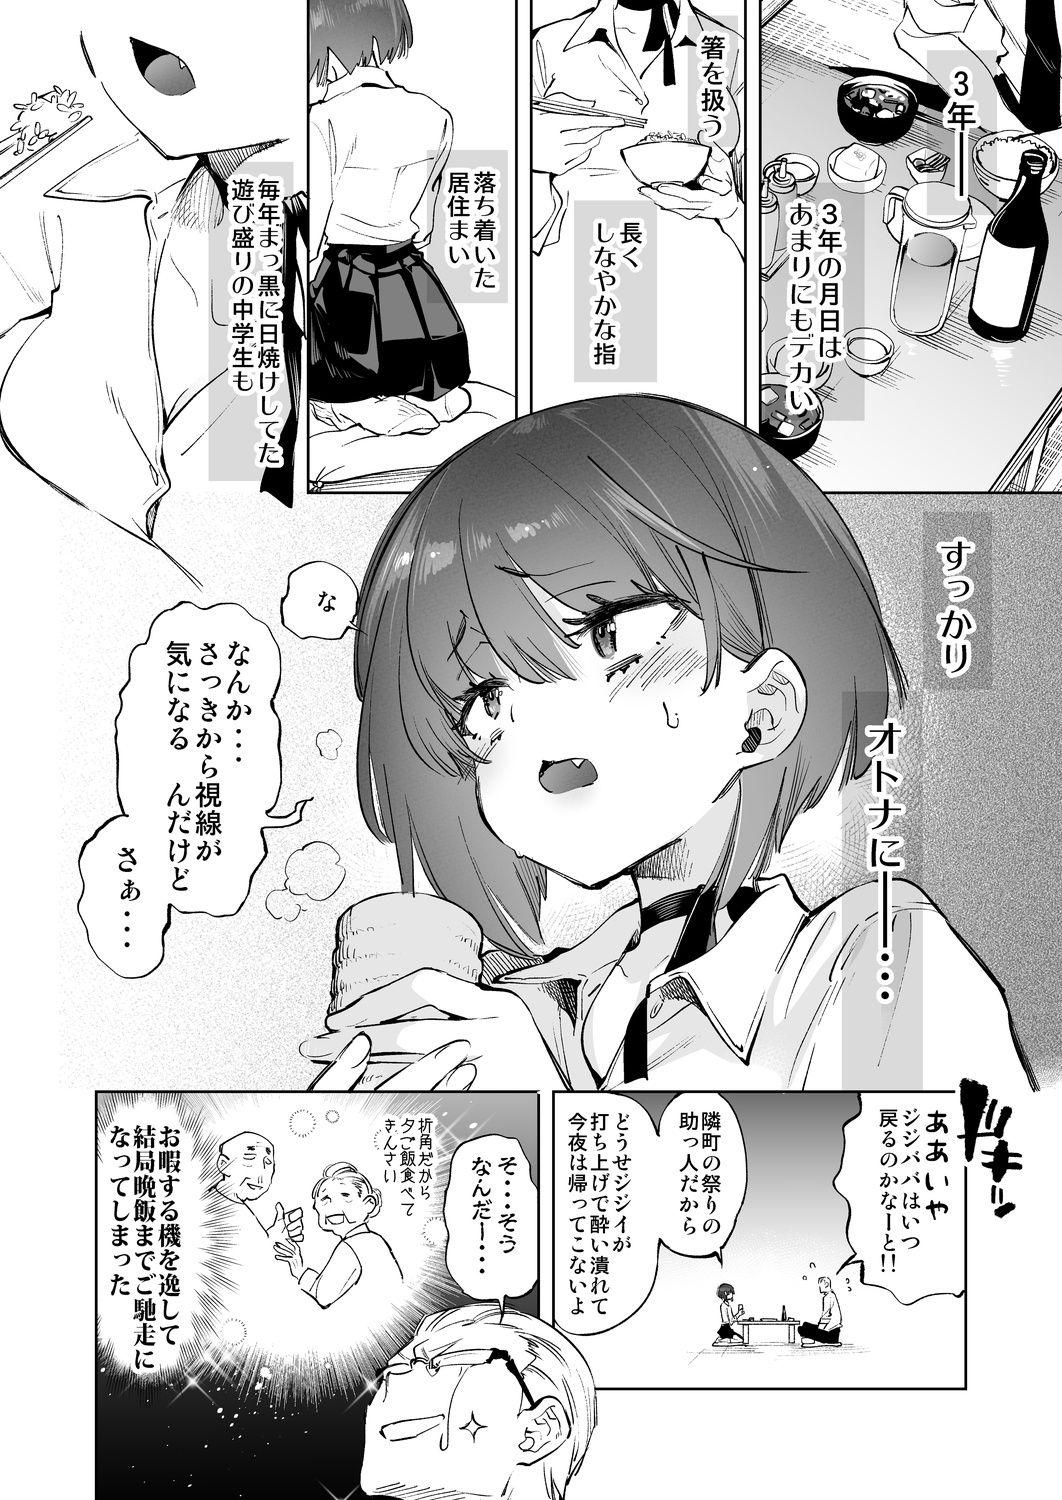 Grandmother 2haku 3ka no Hanayome 3 years after - Original Taboo - Page 8